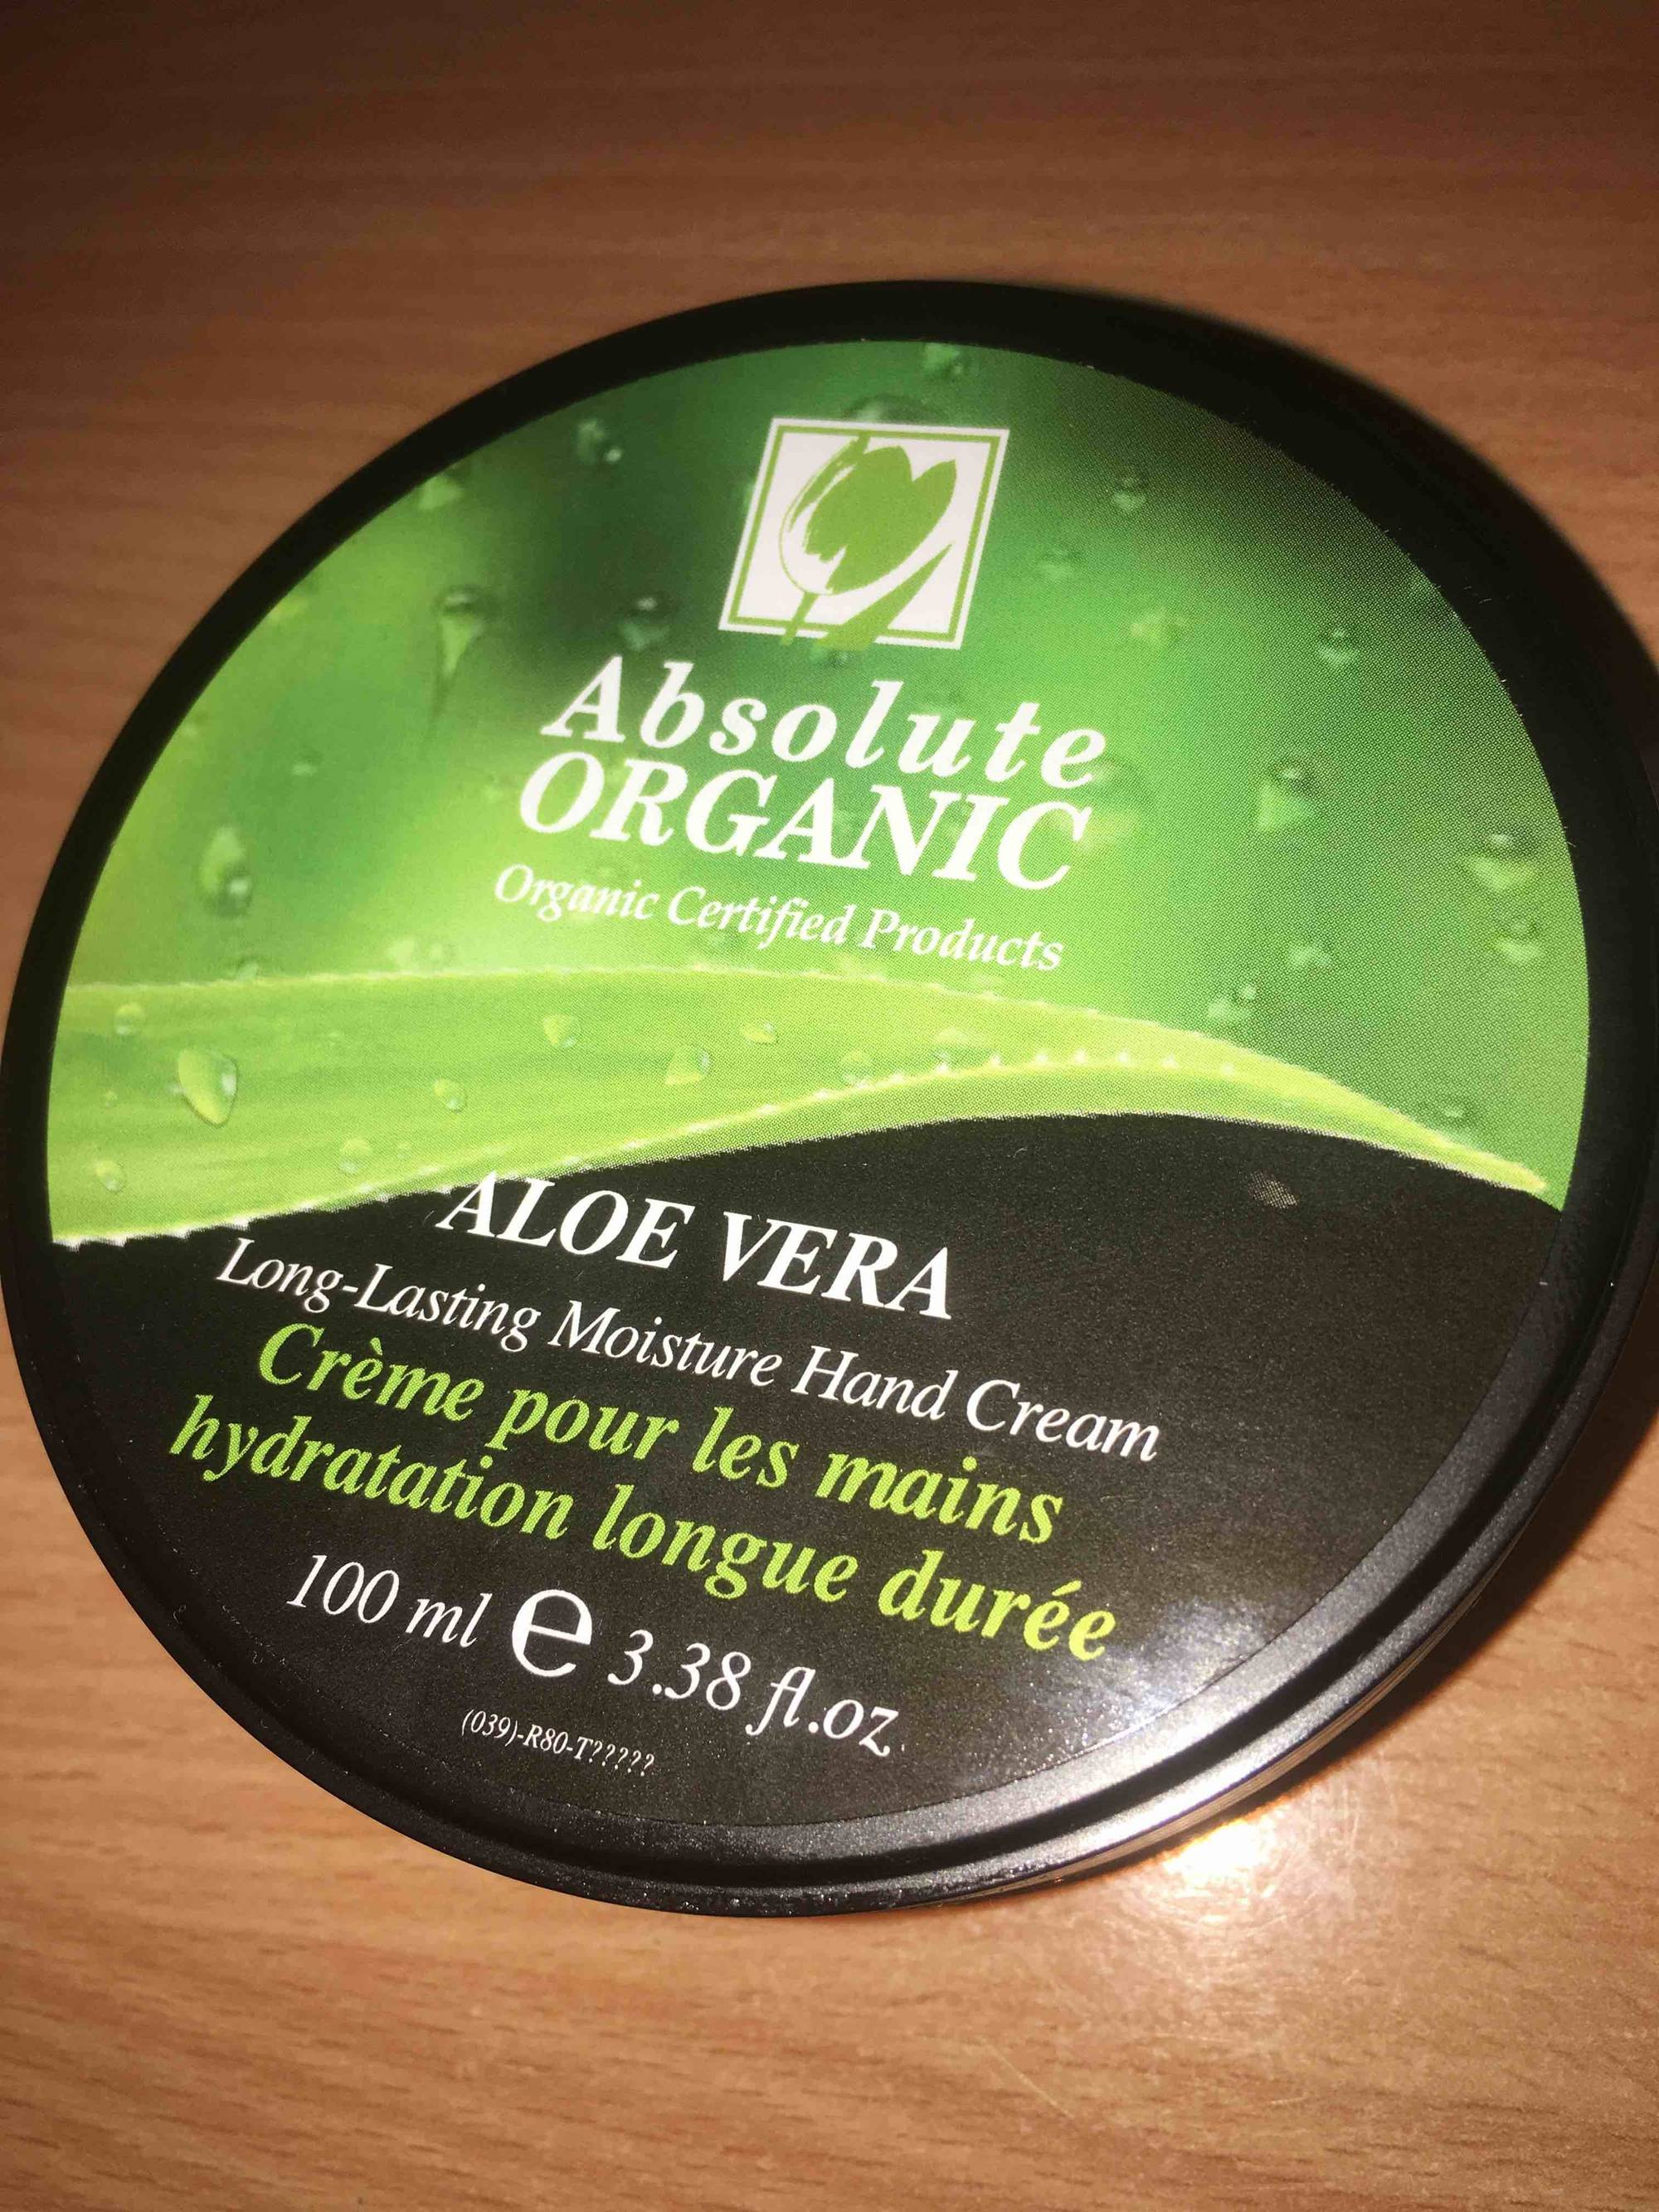 ABSOLUTE ORGANIC - Aloe vera - Crème pour les mains